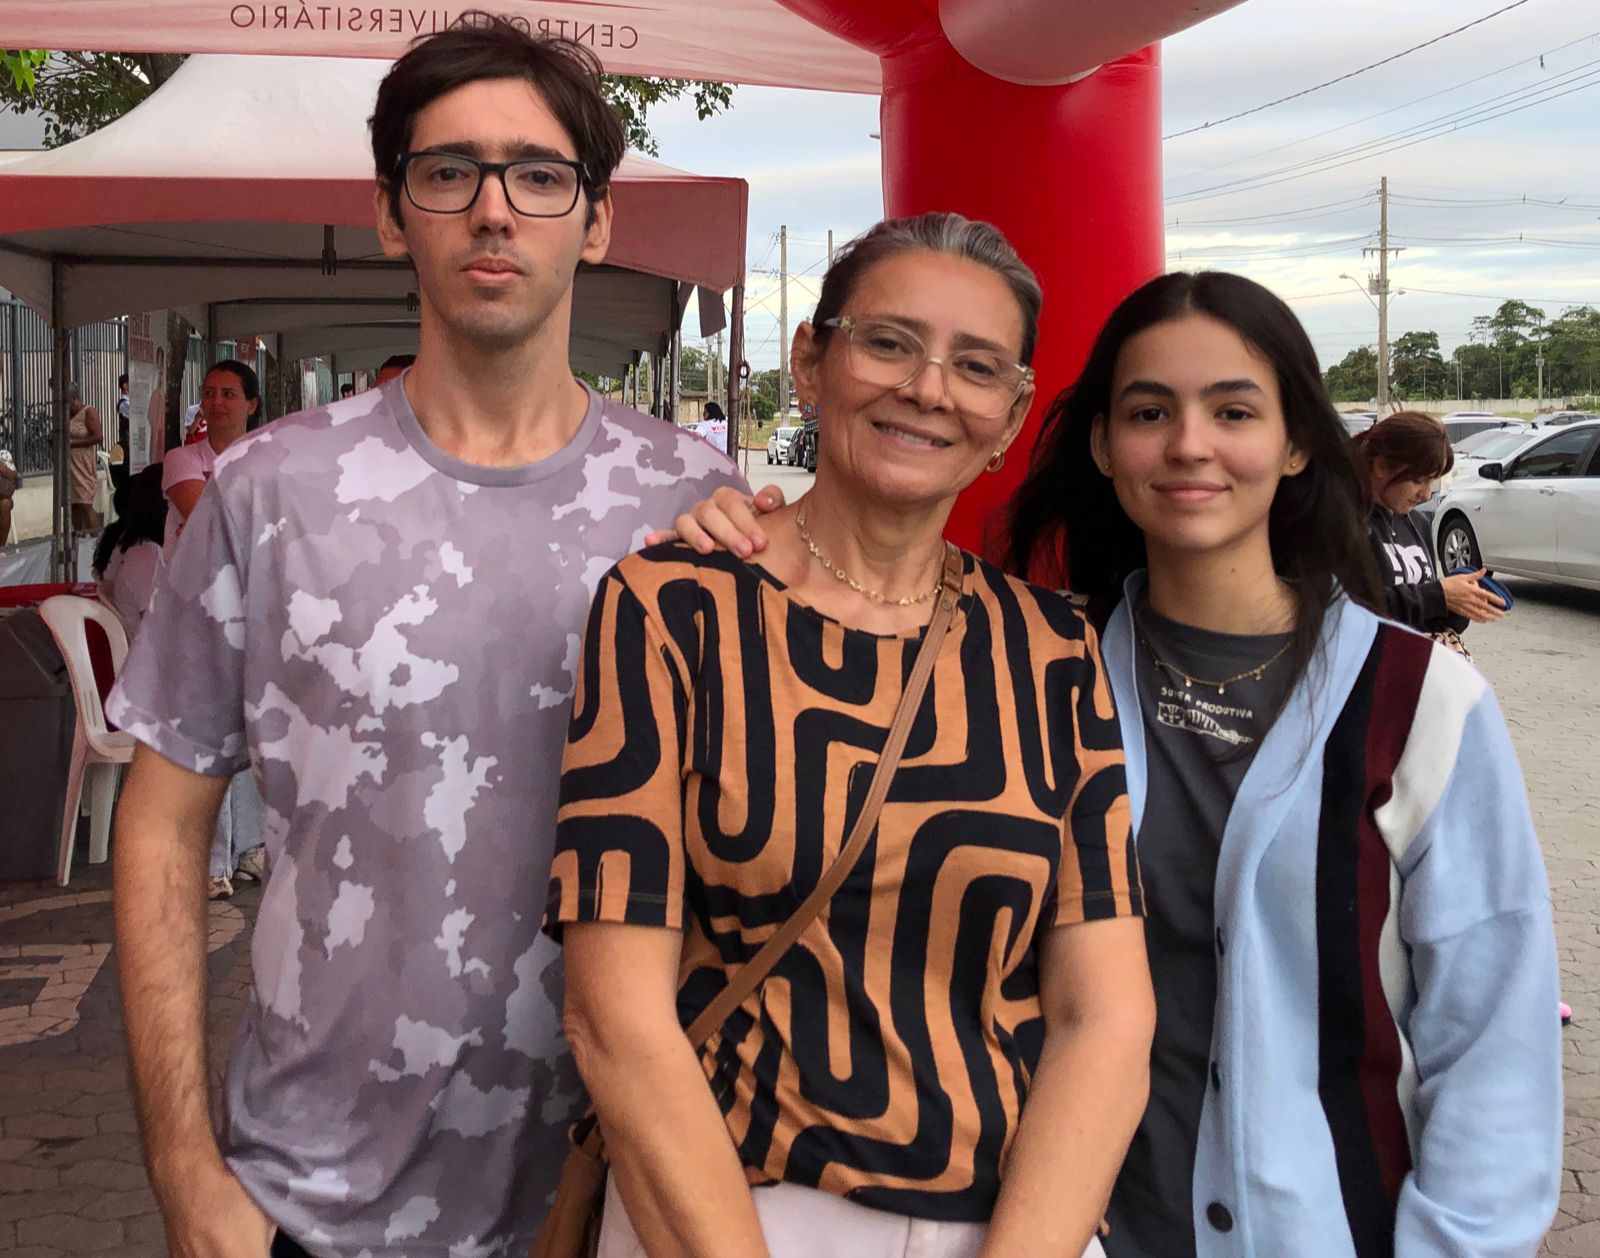 Familiares de Victoria Vieira, 20 anos, a acompanharam ao local de prova do Enem 2023 neste domingo (5)